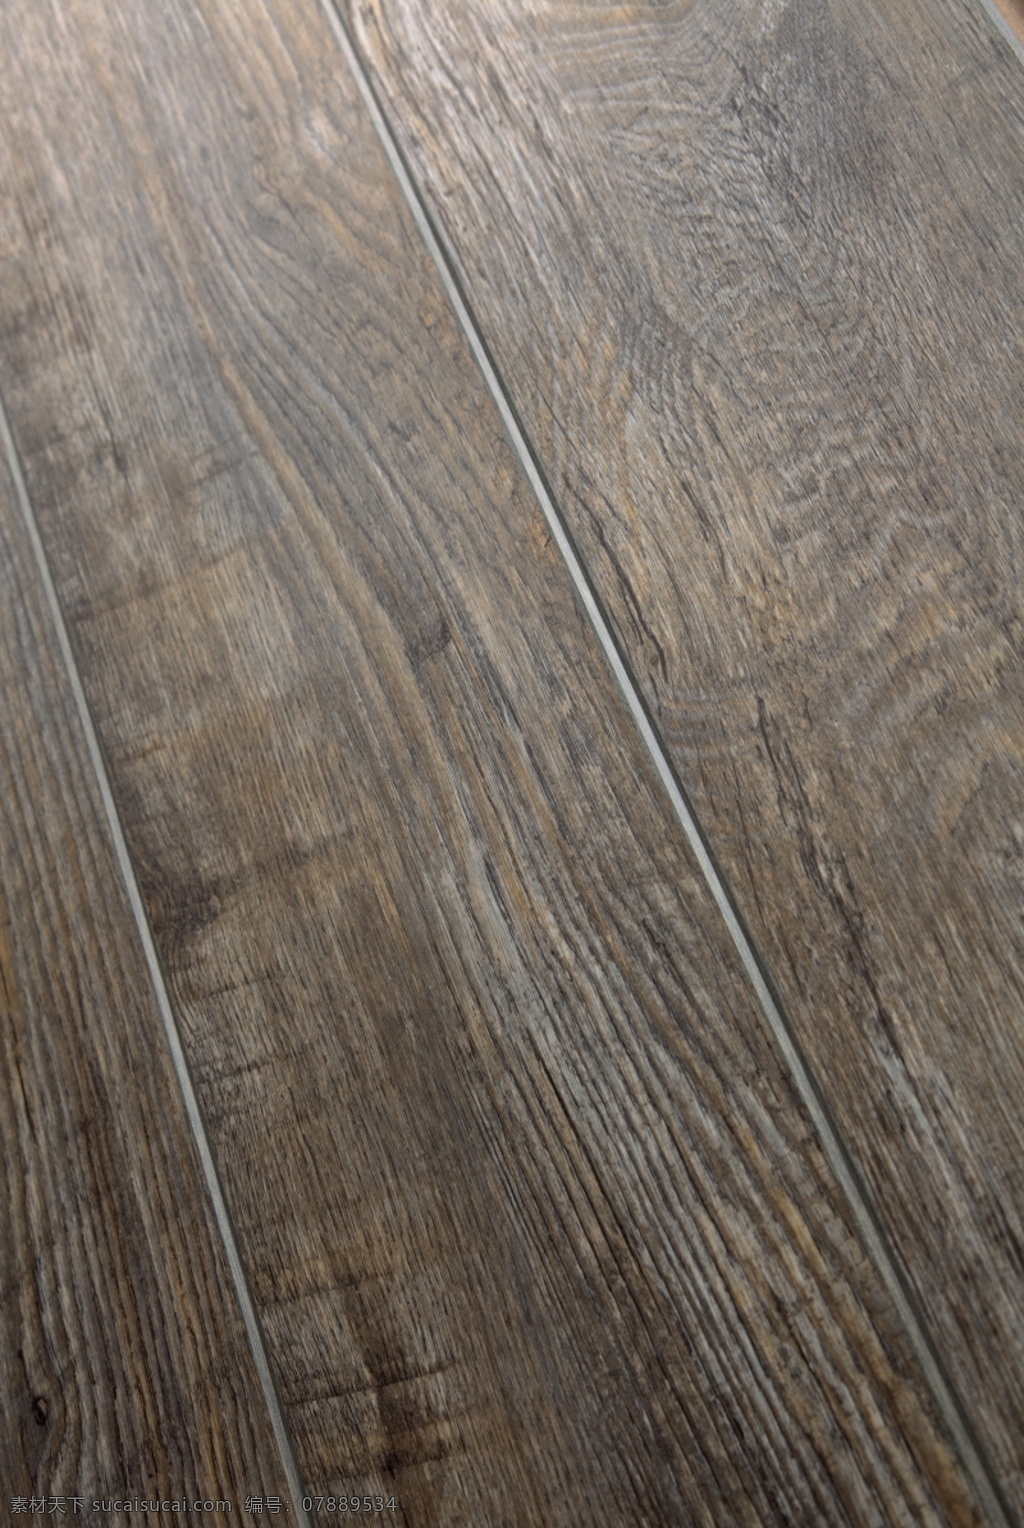 地板 材质 库 3d材质库 3d贴图 地板素材 木地板 地板材质库 地板精选 专业地板 真实 木纹 地板块 大 分辨率 高清木地板 3d 贴图